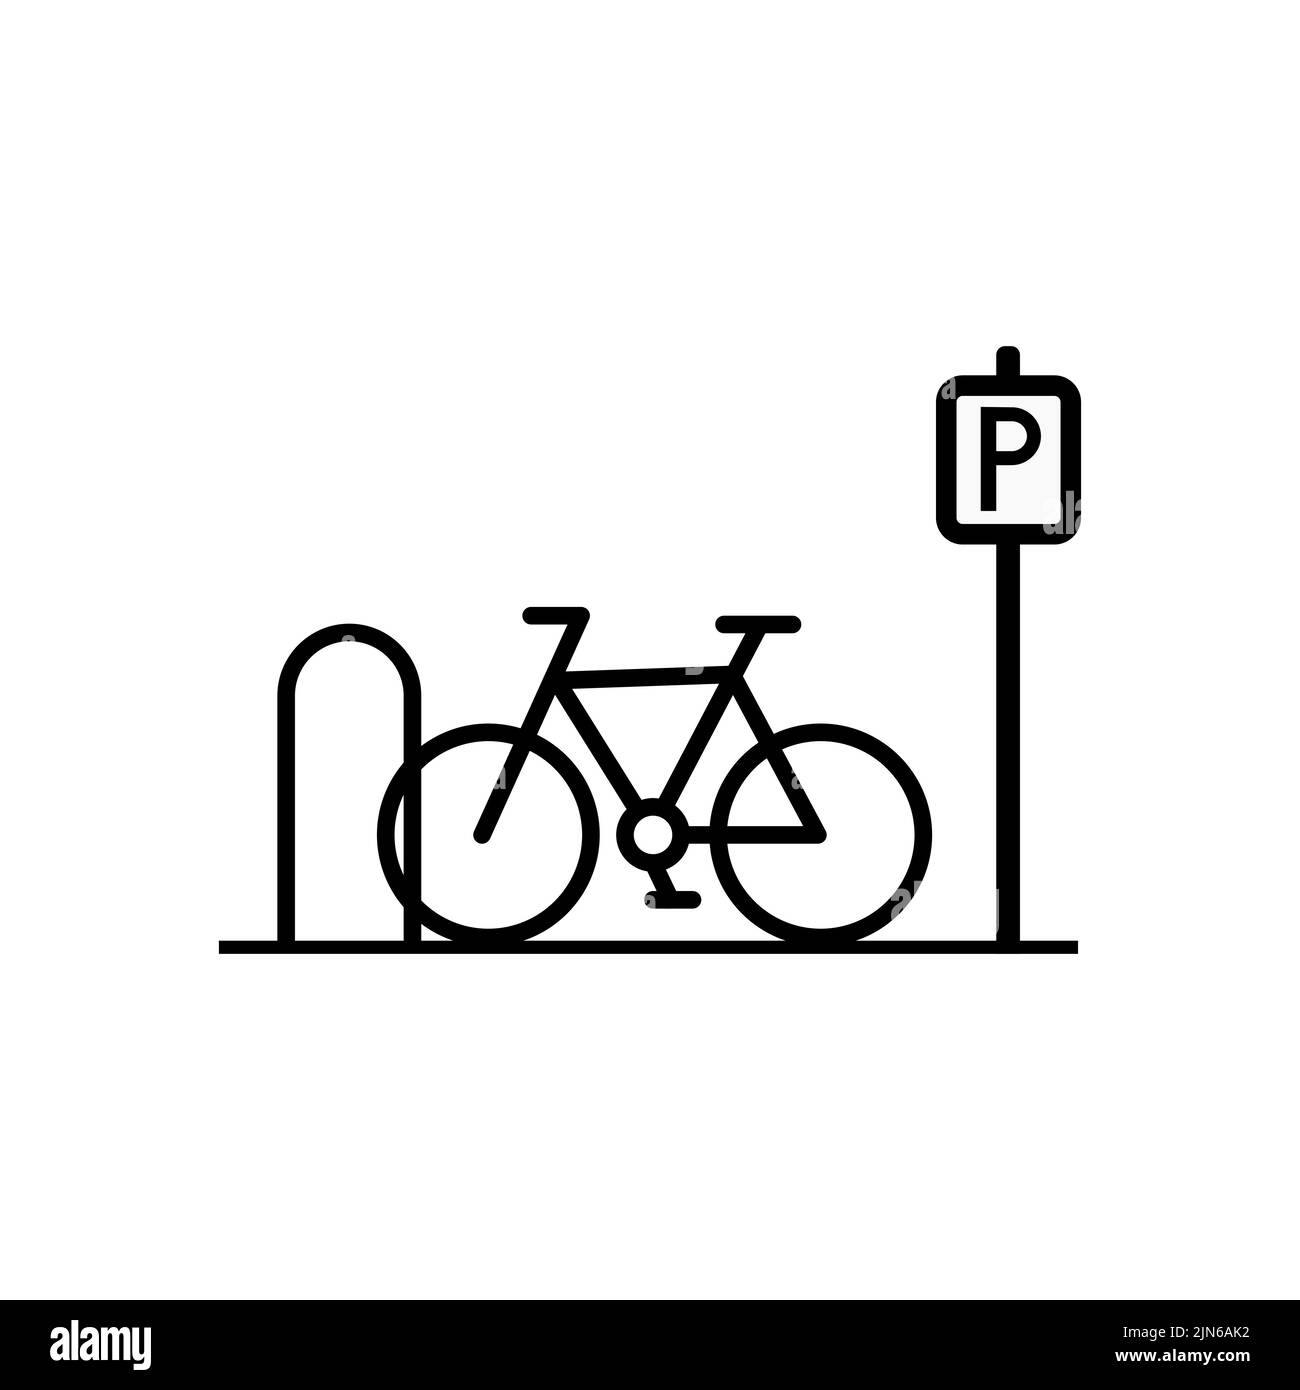 Aparcamiento De Bicicletas, Ilustración Plana Simple Gráfico En Tonos De  Gris. Ilustraciones svg, vectoriales, clip art vectorizado libre de  derechos. Image 89950484